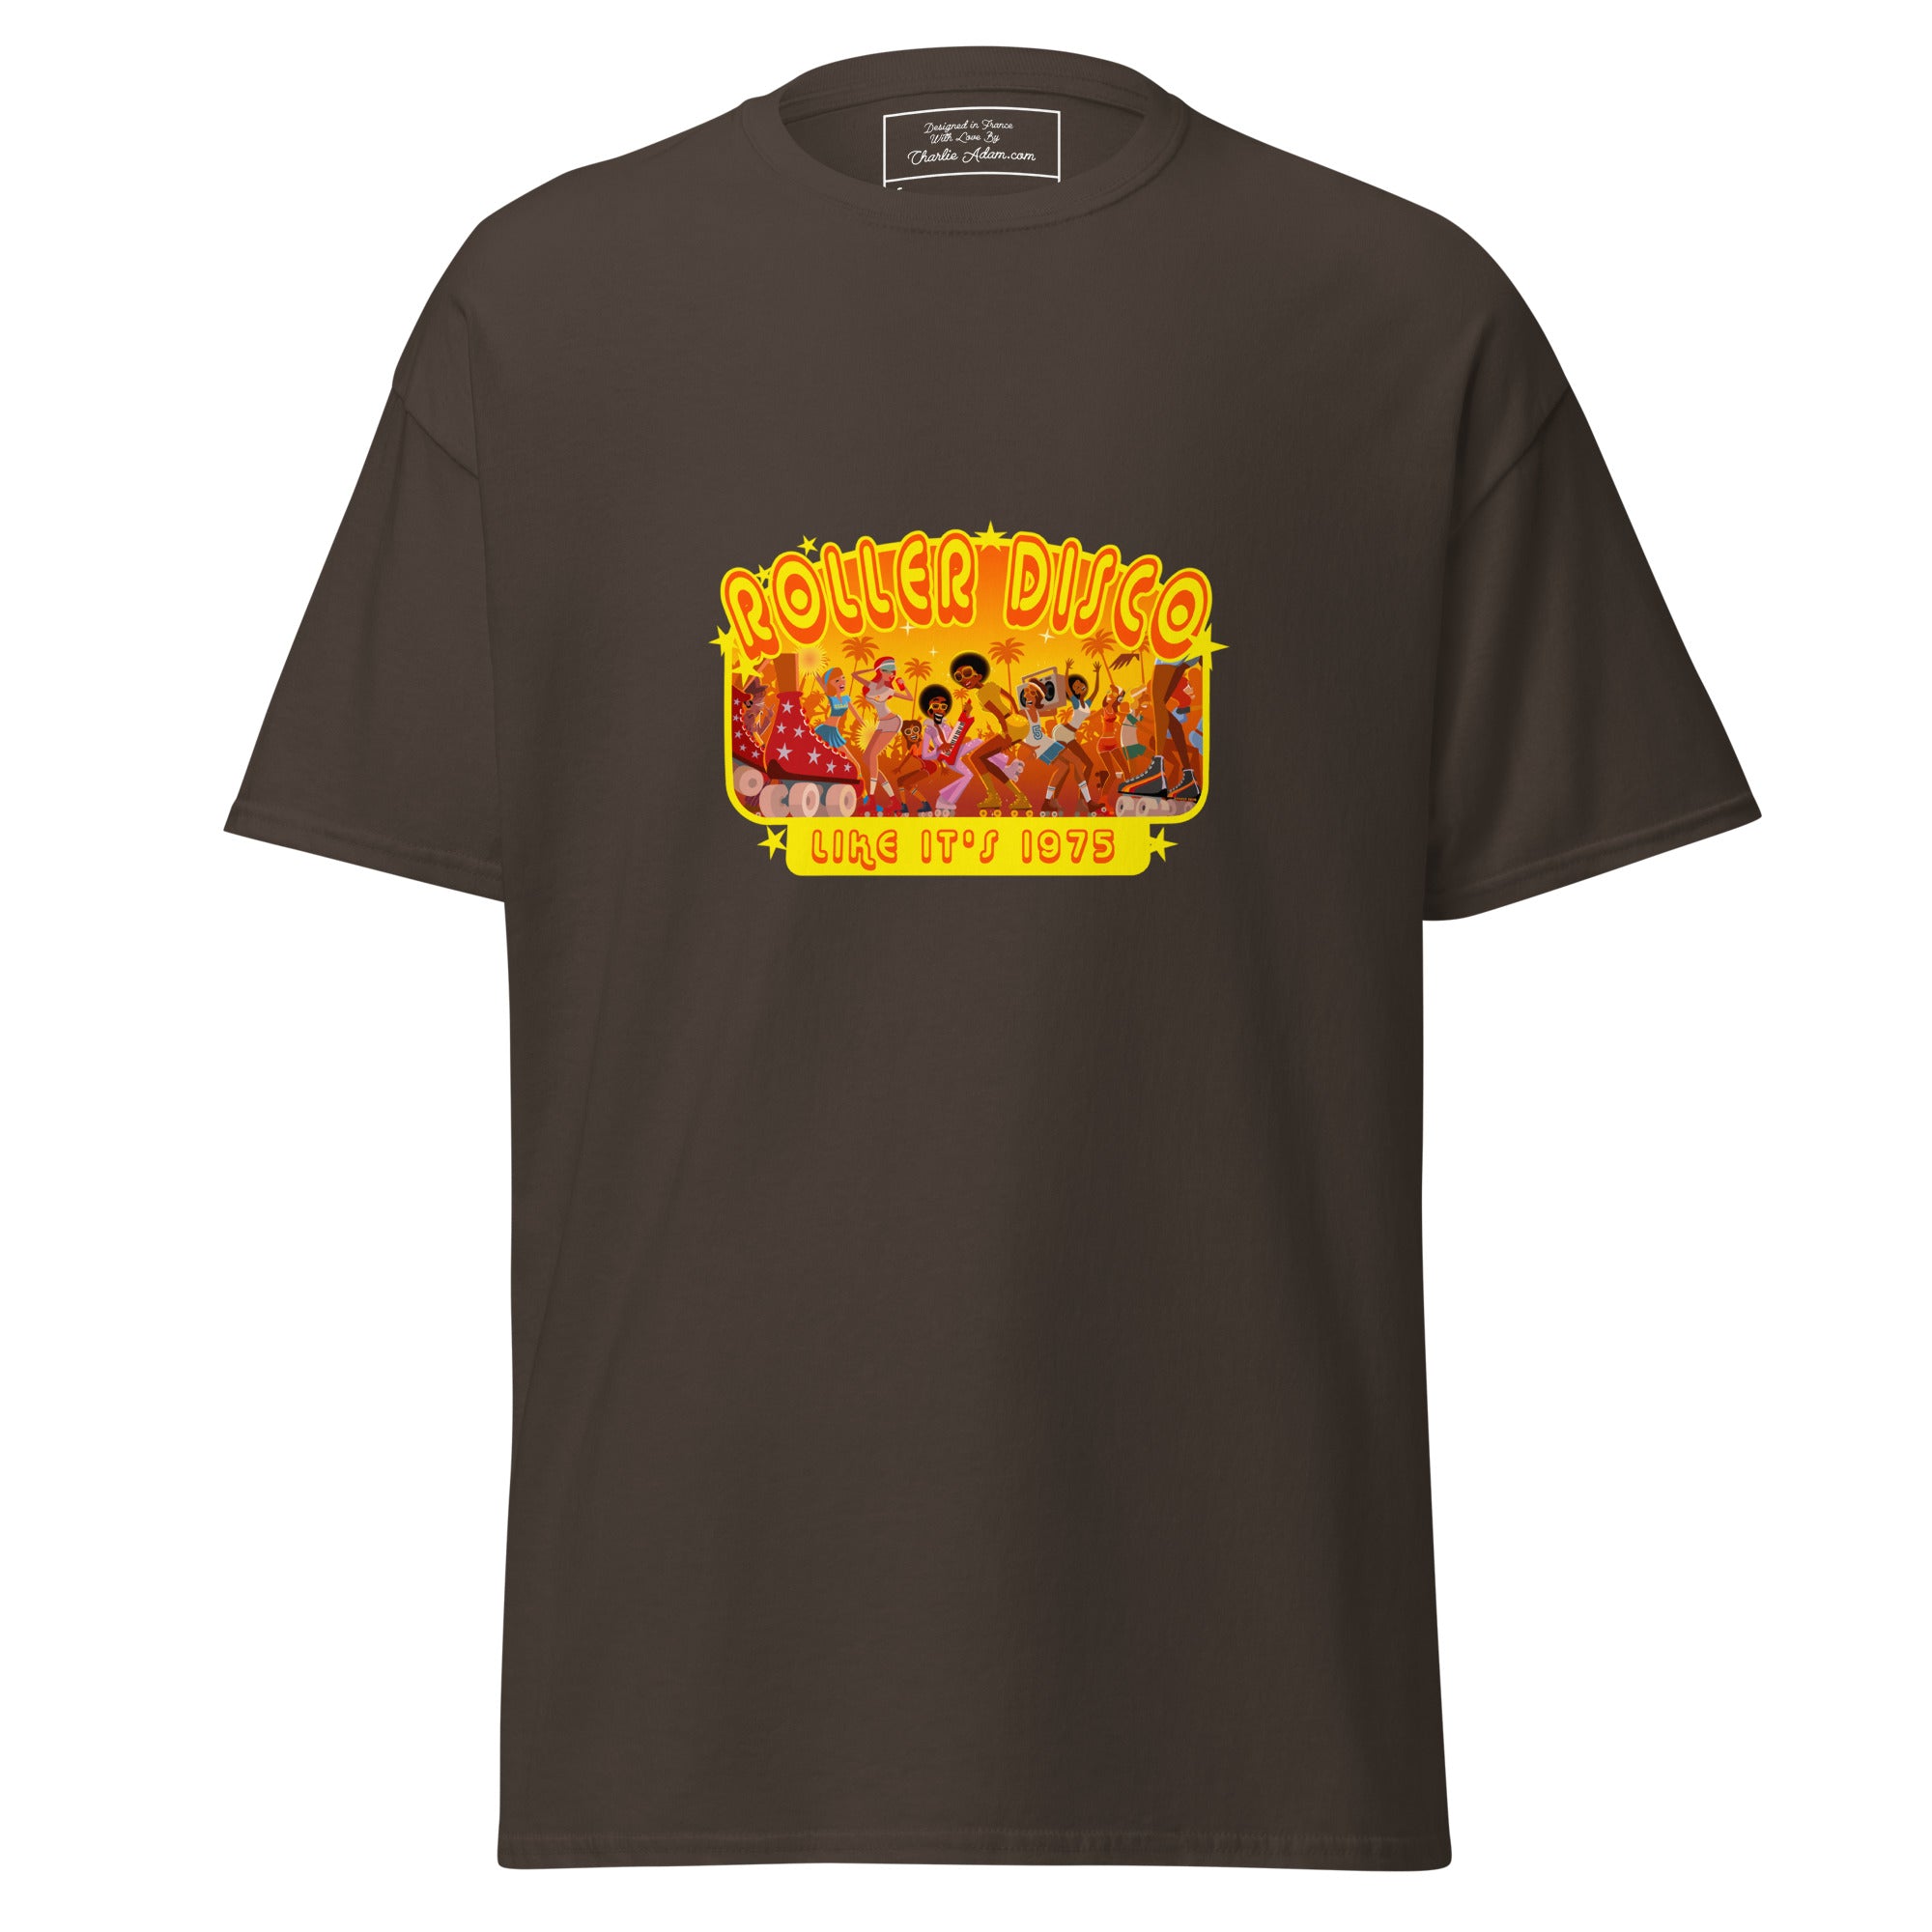 T-shirt classique homme Roller Disco 1975 sur couleurs foncées